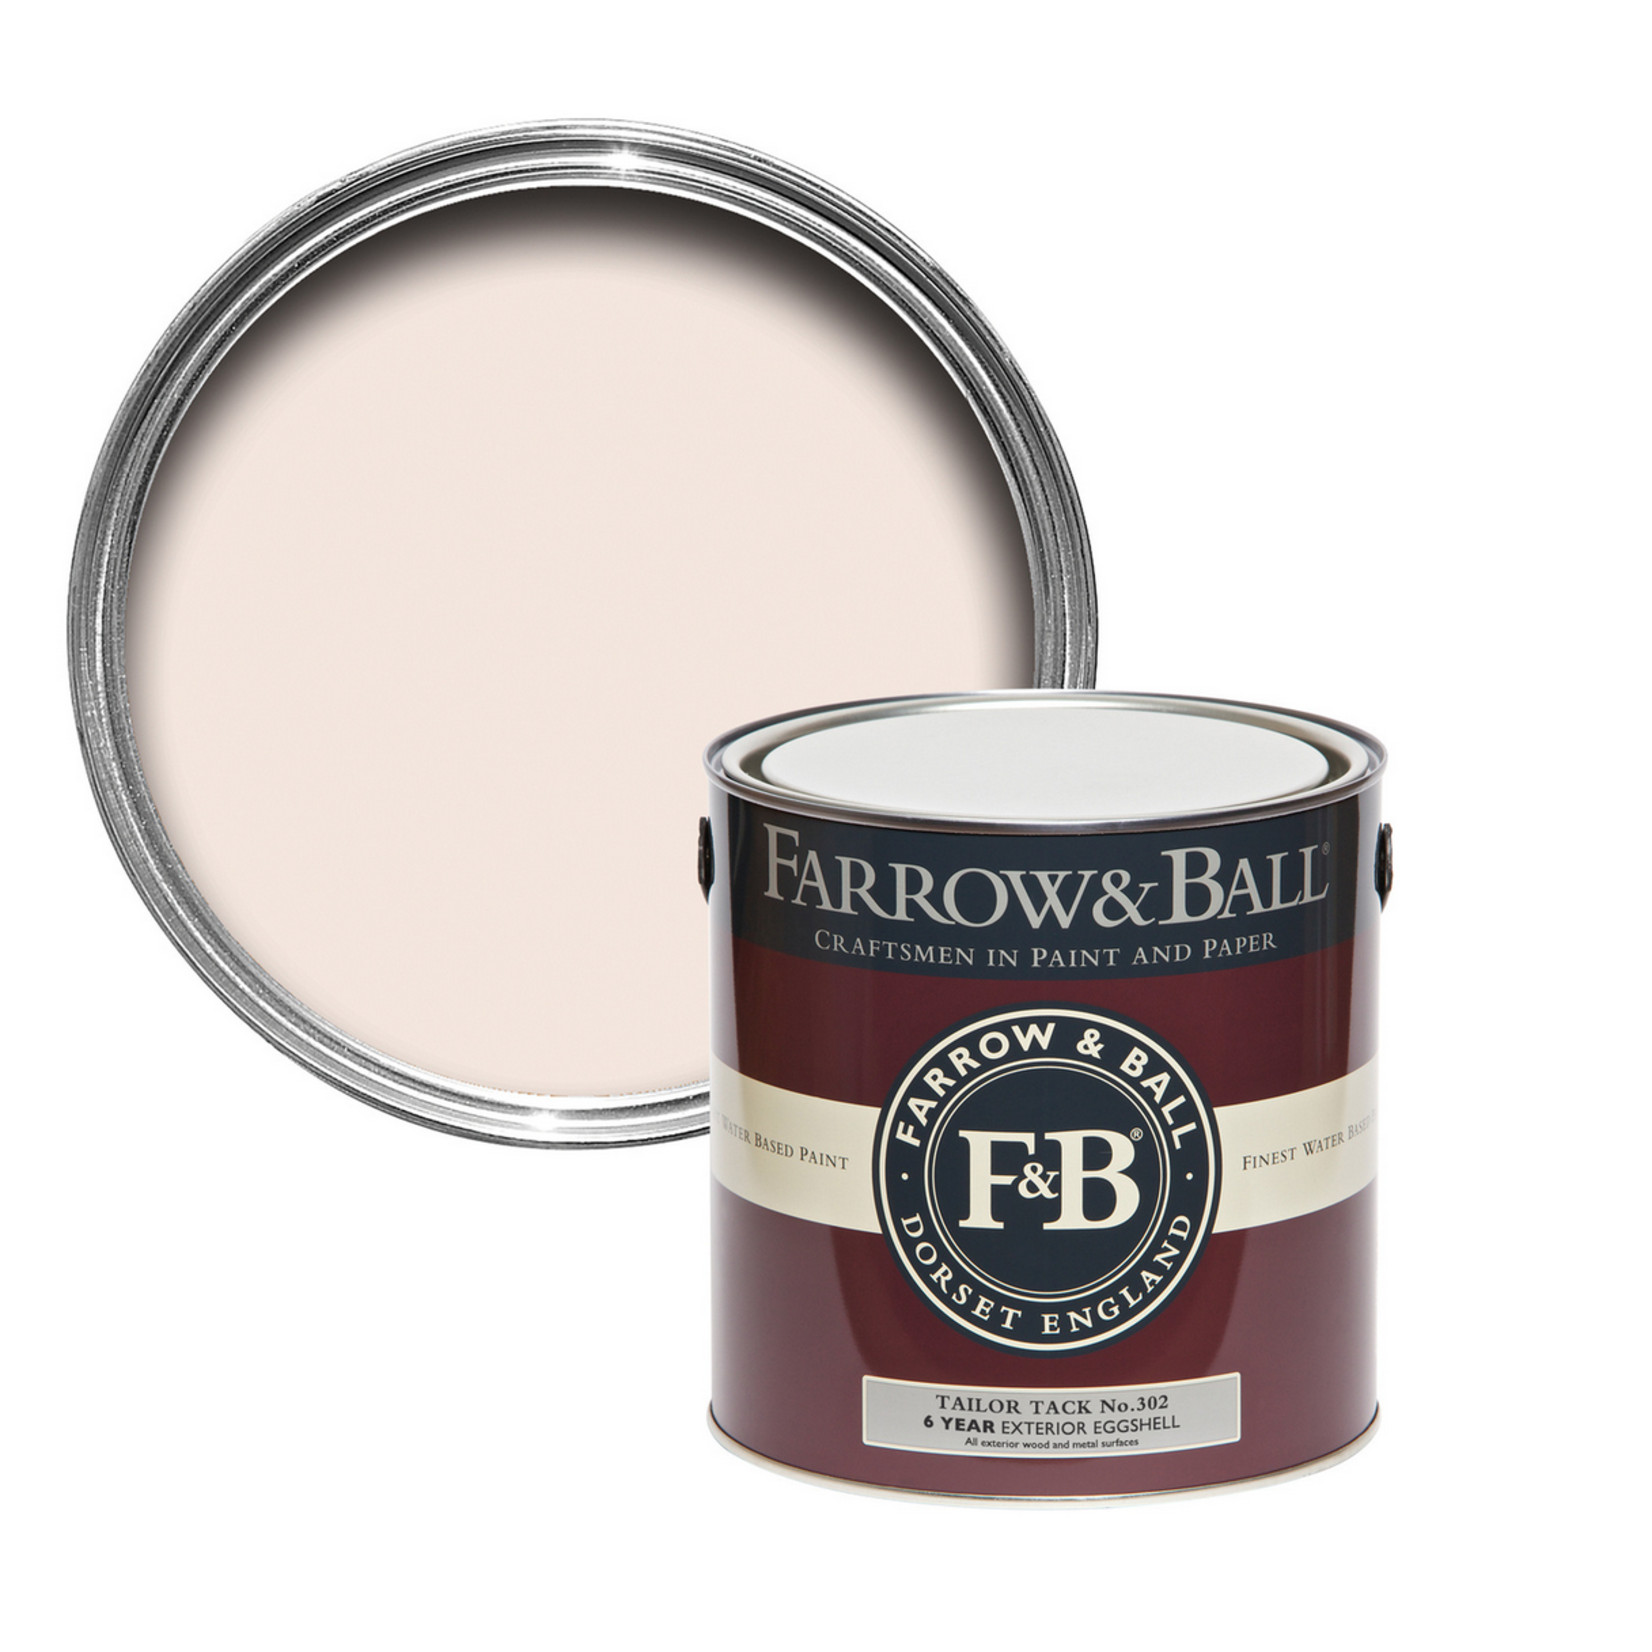 Farrow and Ball Gallon Exterior Eggshell Tailor Tack No.302